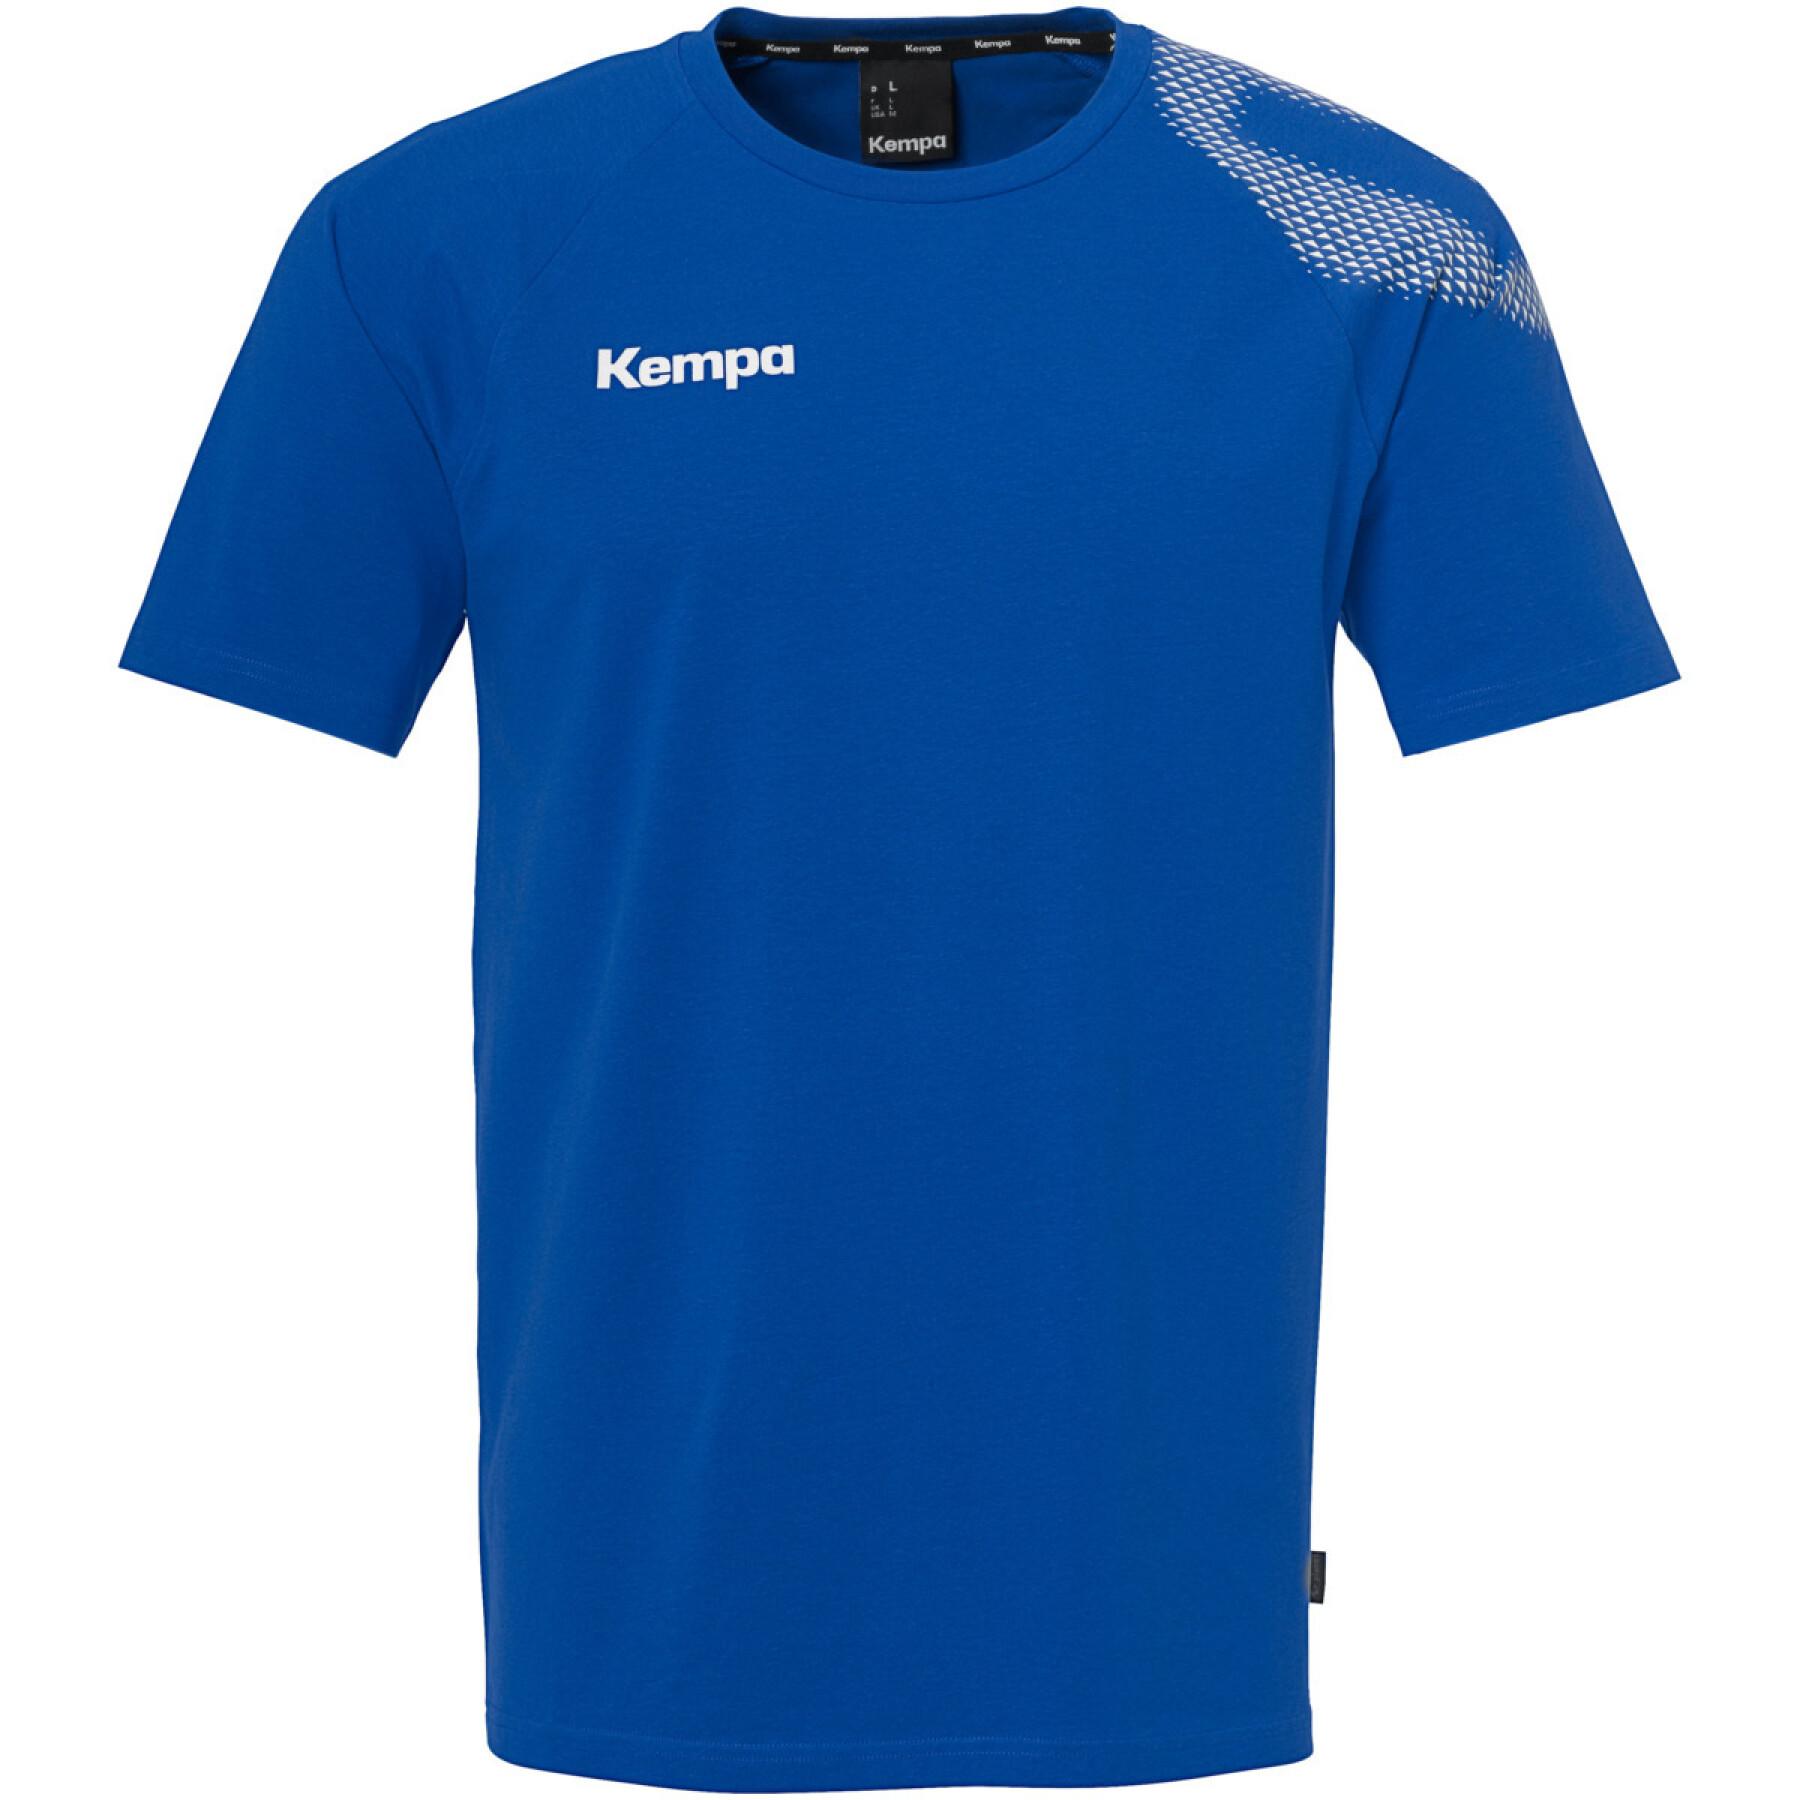 Camiseta infantil Kempa Core 26